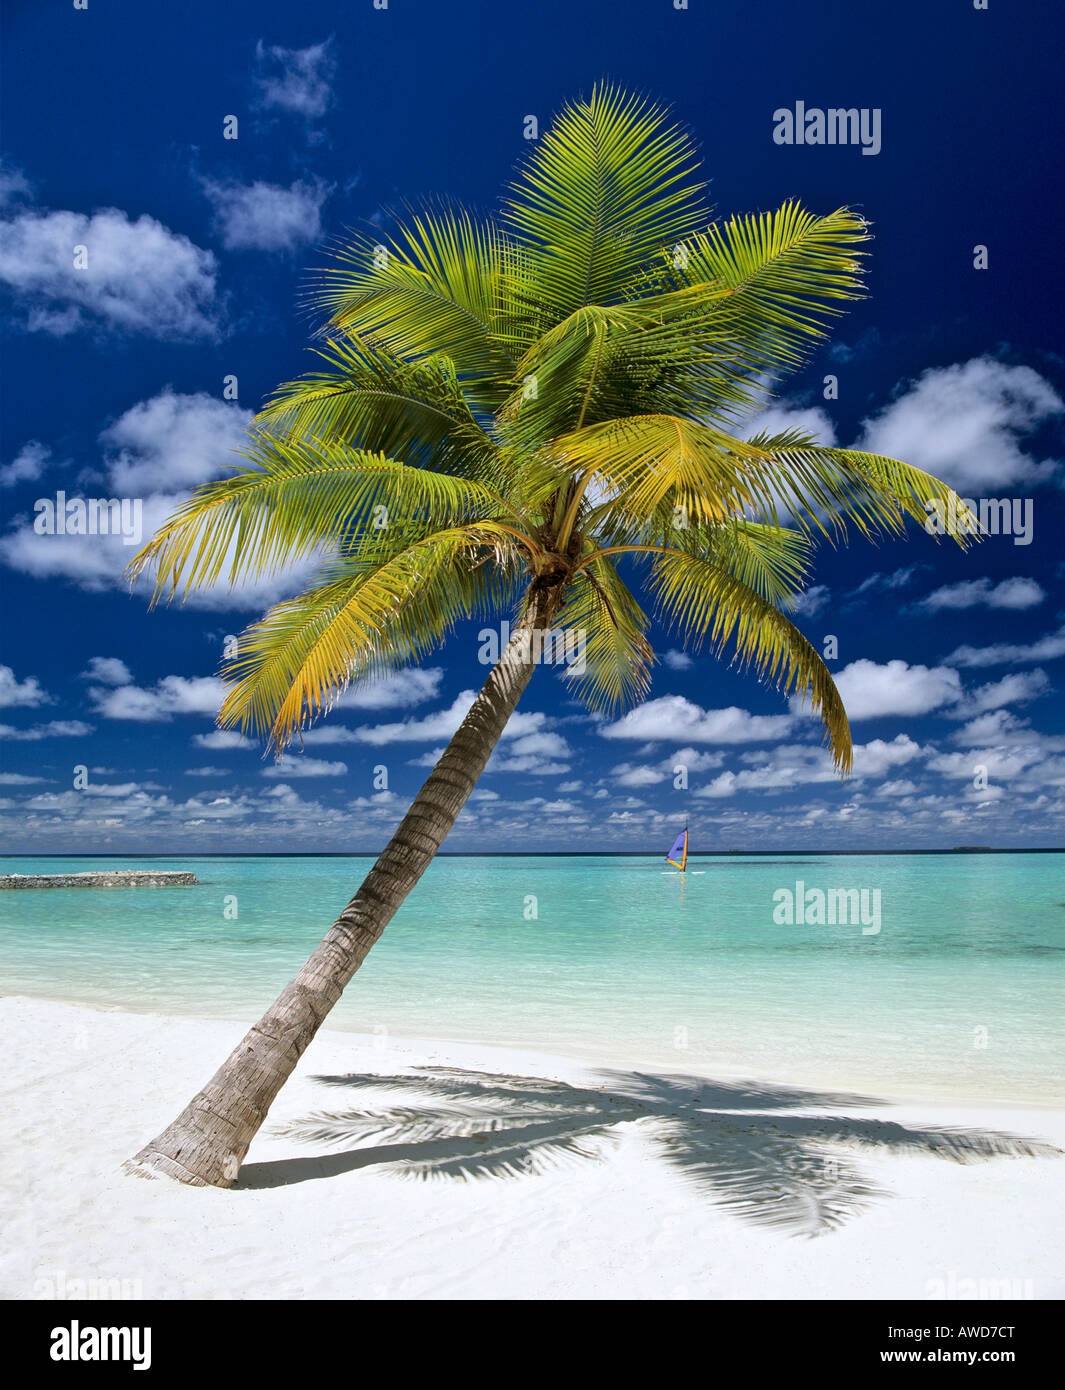 Las palmeras, playa y tablas de windsurf, Maldivas, Océano Índico Foto de stock